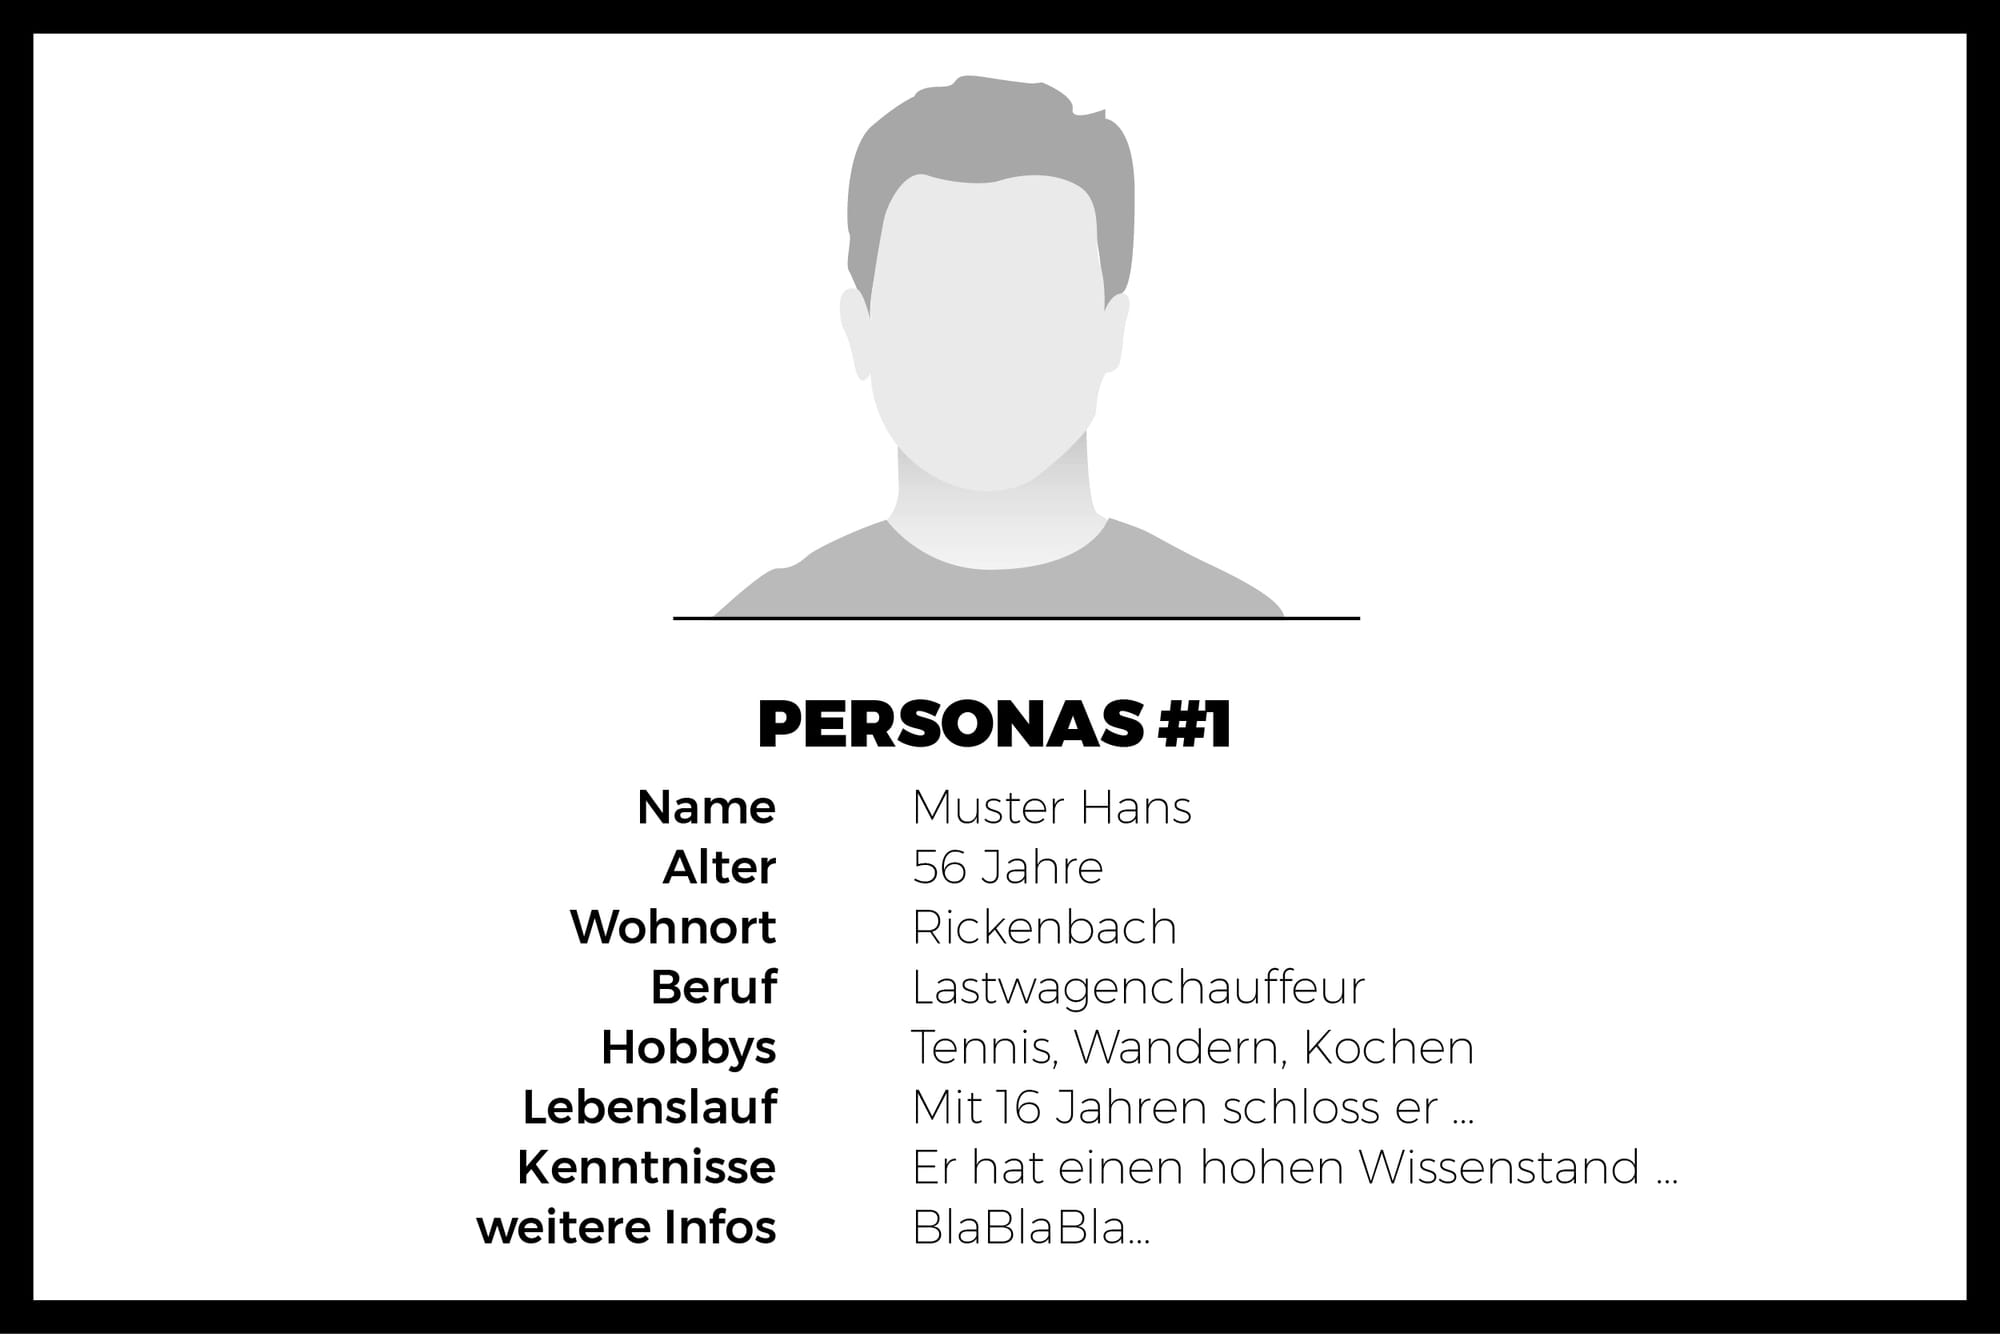 Abbildung von Persona mit detaillierten Informationen: Name, Alter, Beruf, Lebenslauf etc.